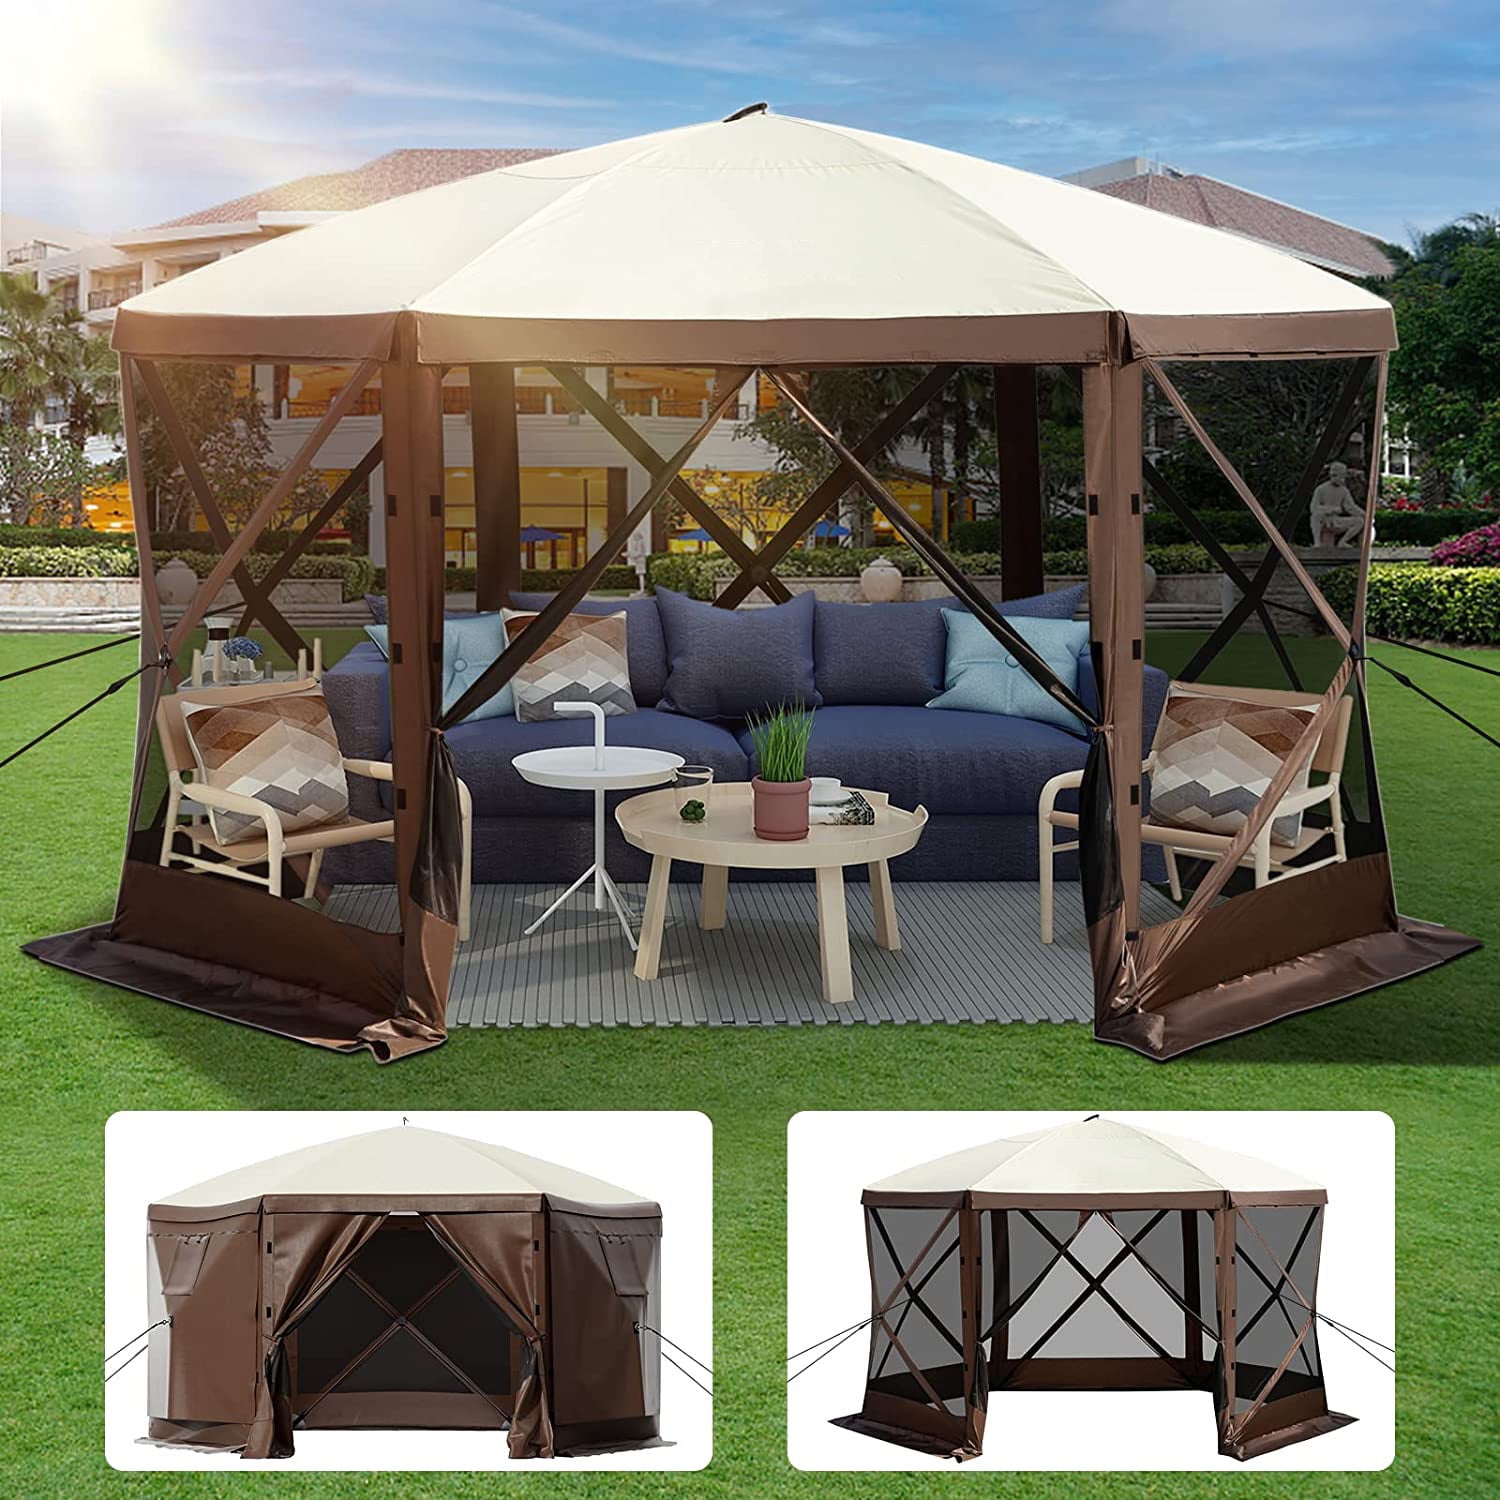 のぼり「リサイクル」 Z-Shade Mesh Wall Screen Room Attachment for 12 x 12 Foot  Outdoor Canopy Tent Portable Shelter, Tan (Screen Only, Frame Sold  Separately)